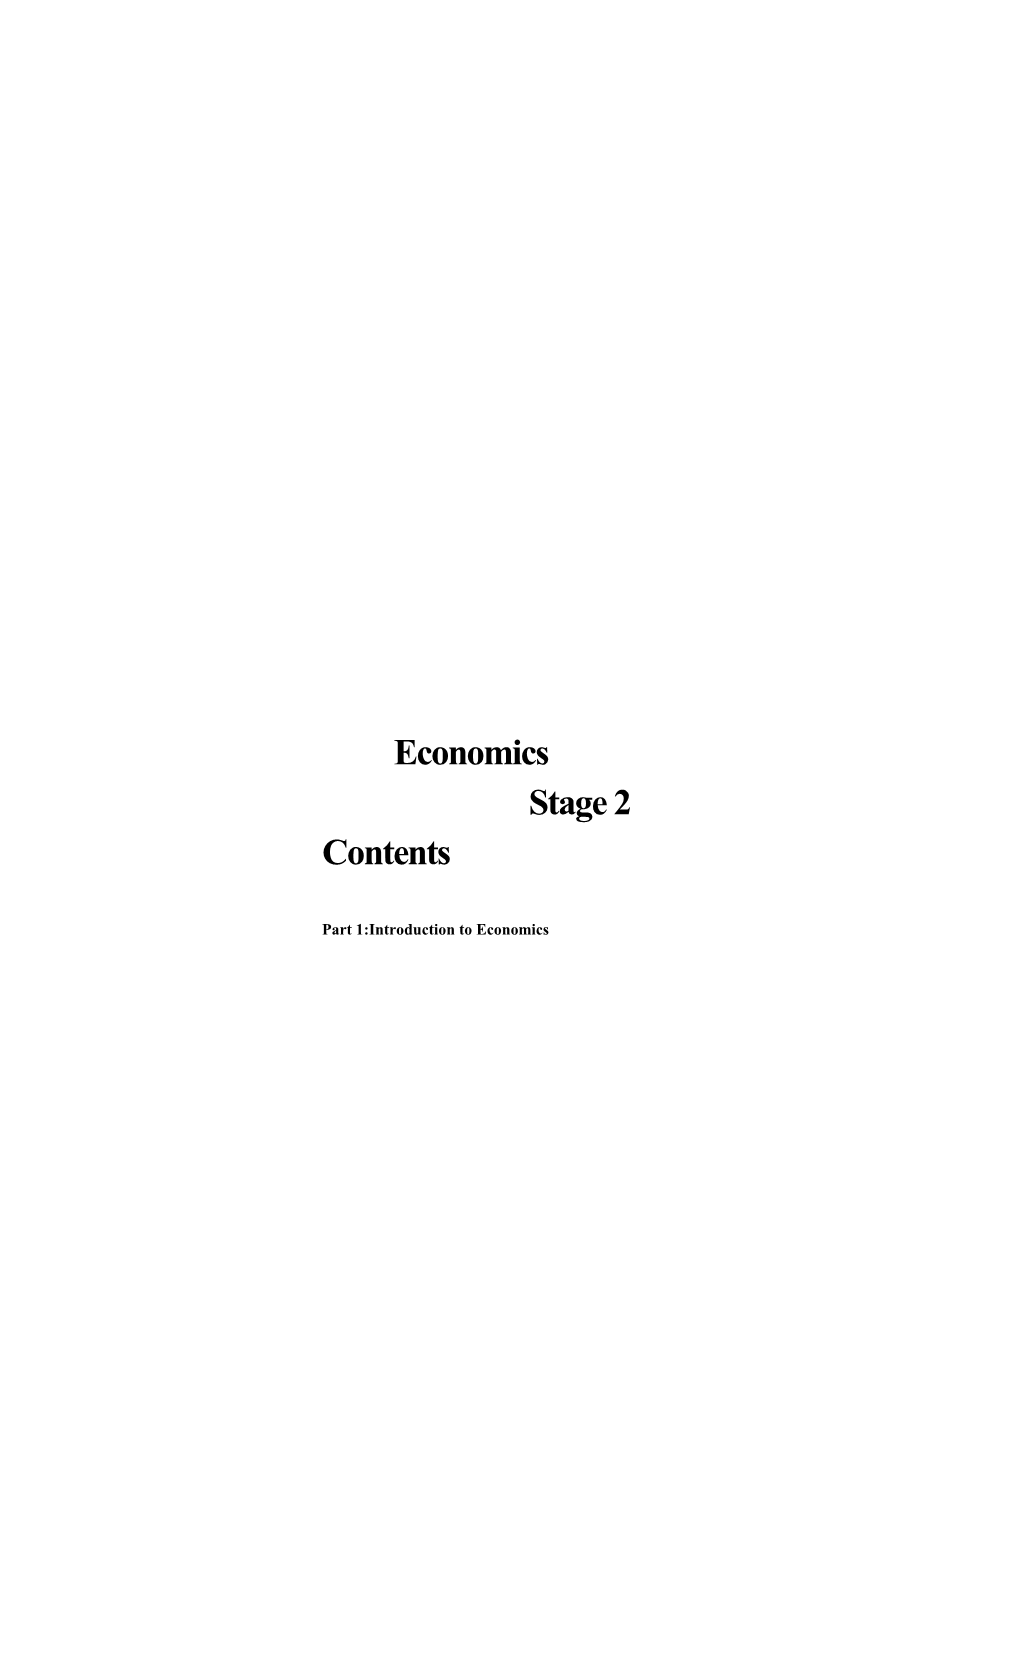 Economics Stage 2 Contents